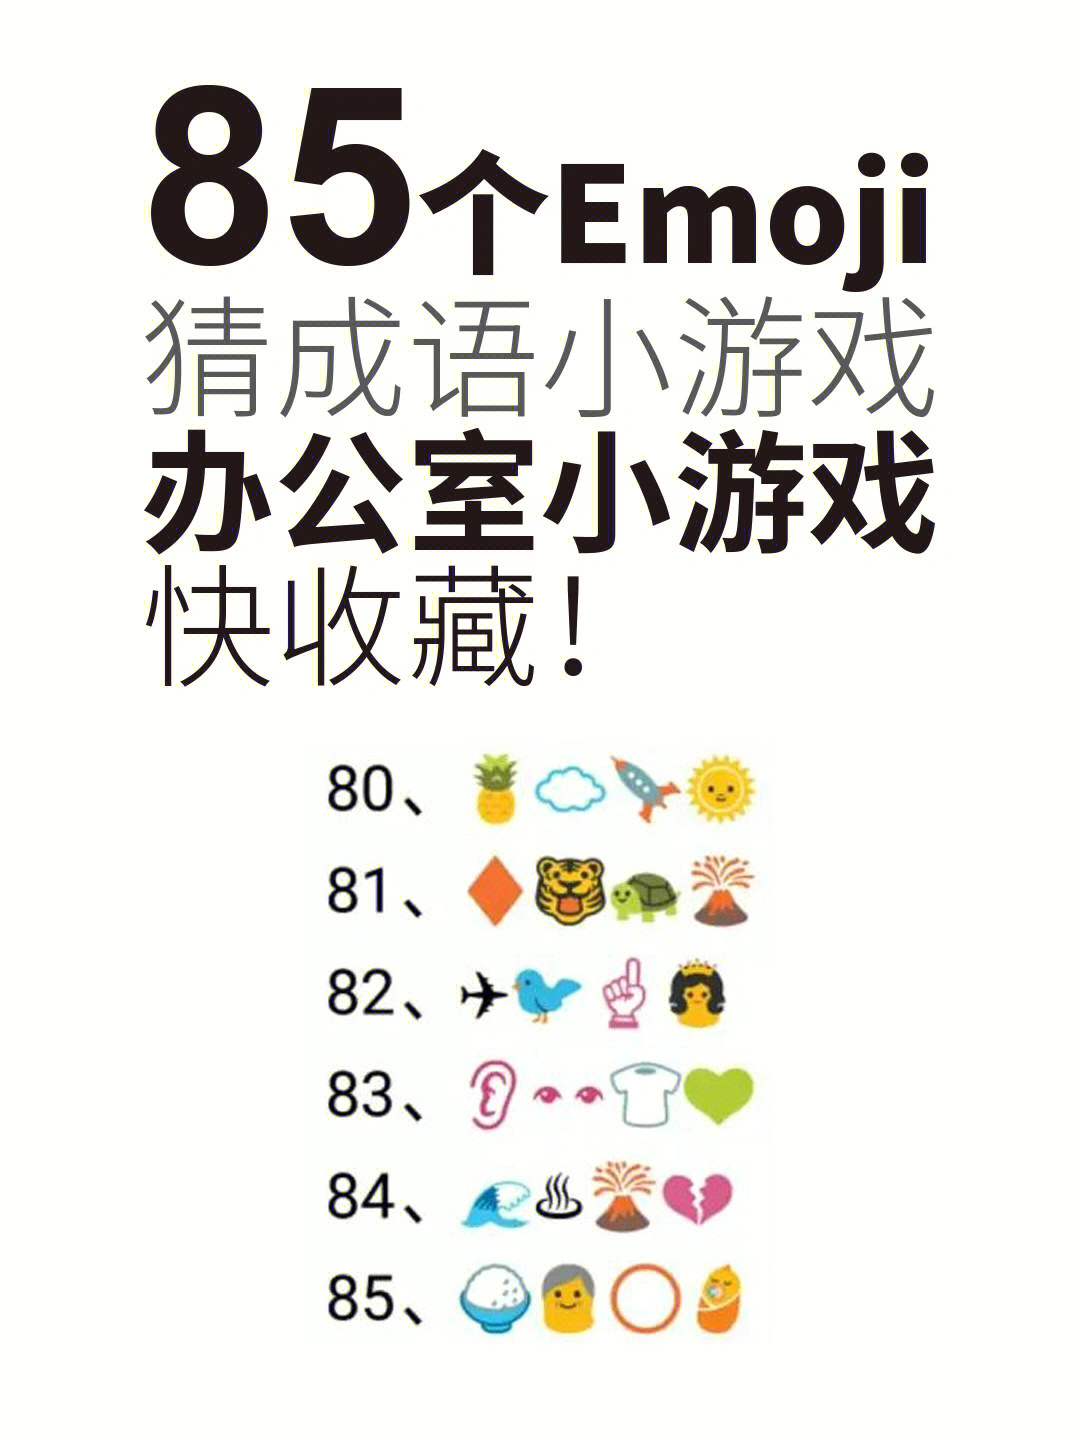 85个emoji表情猜成语题目办公室小游戏